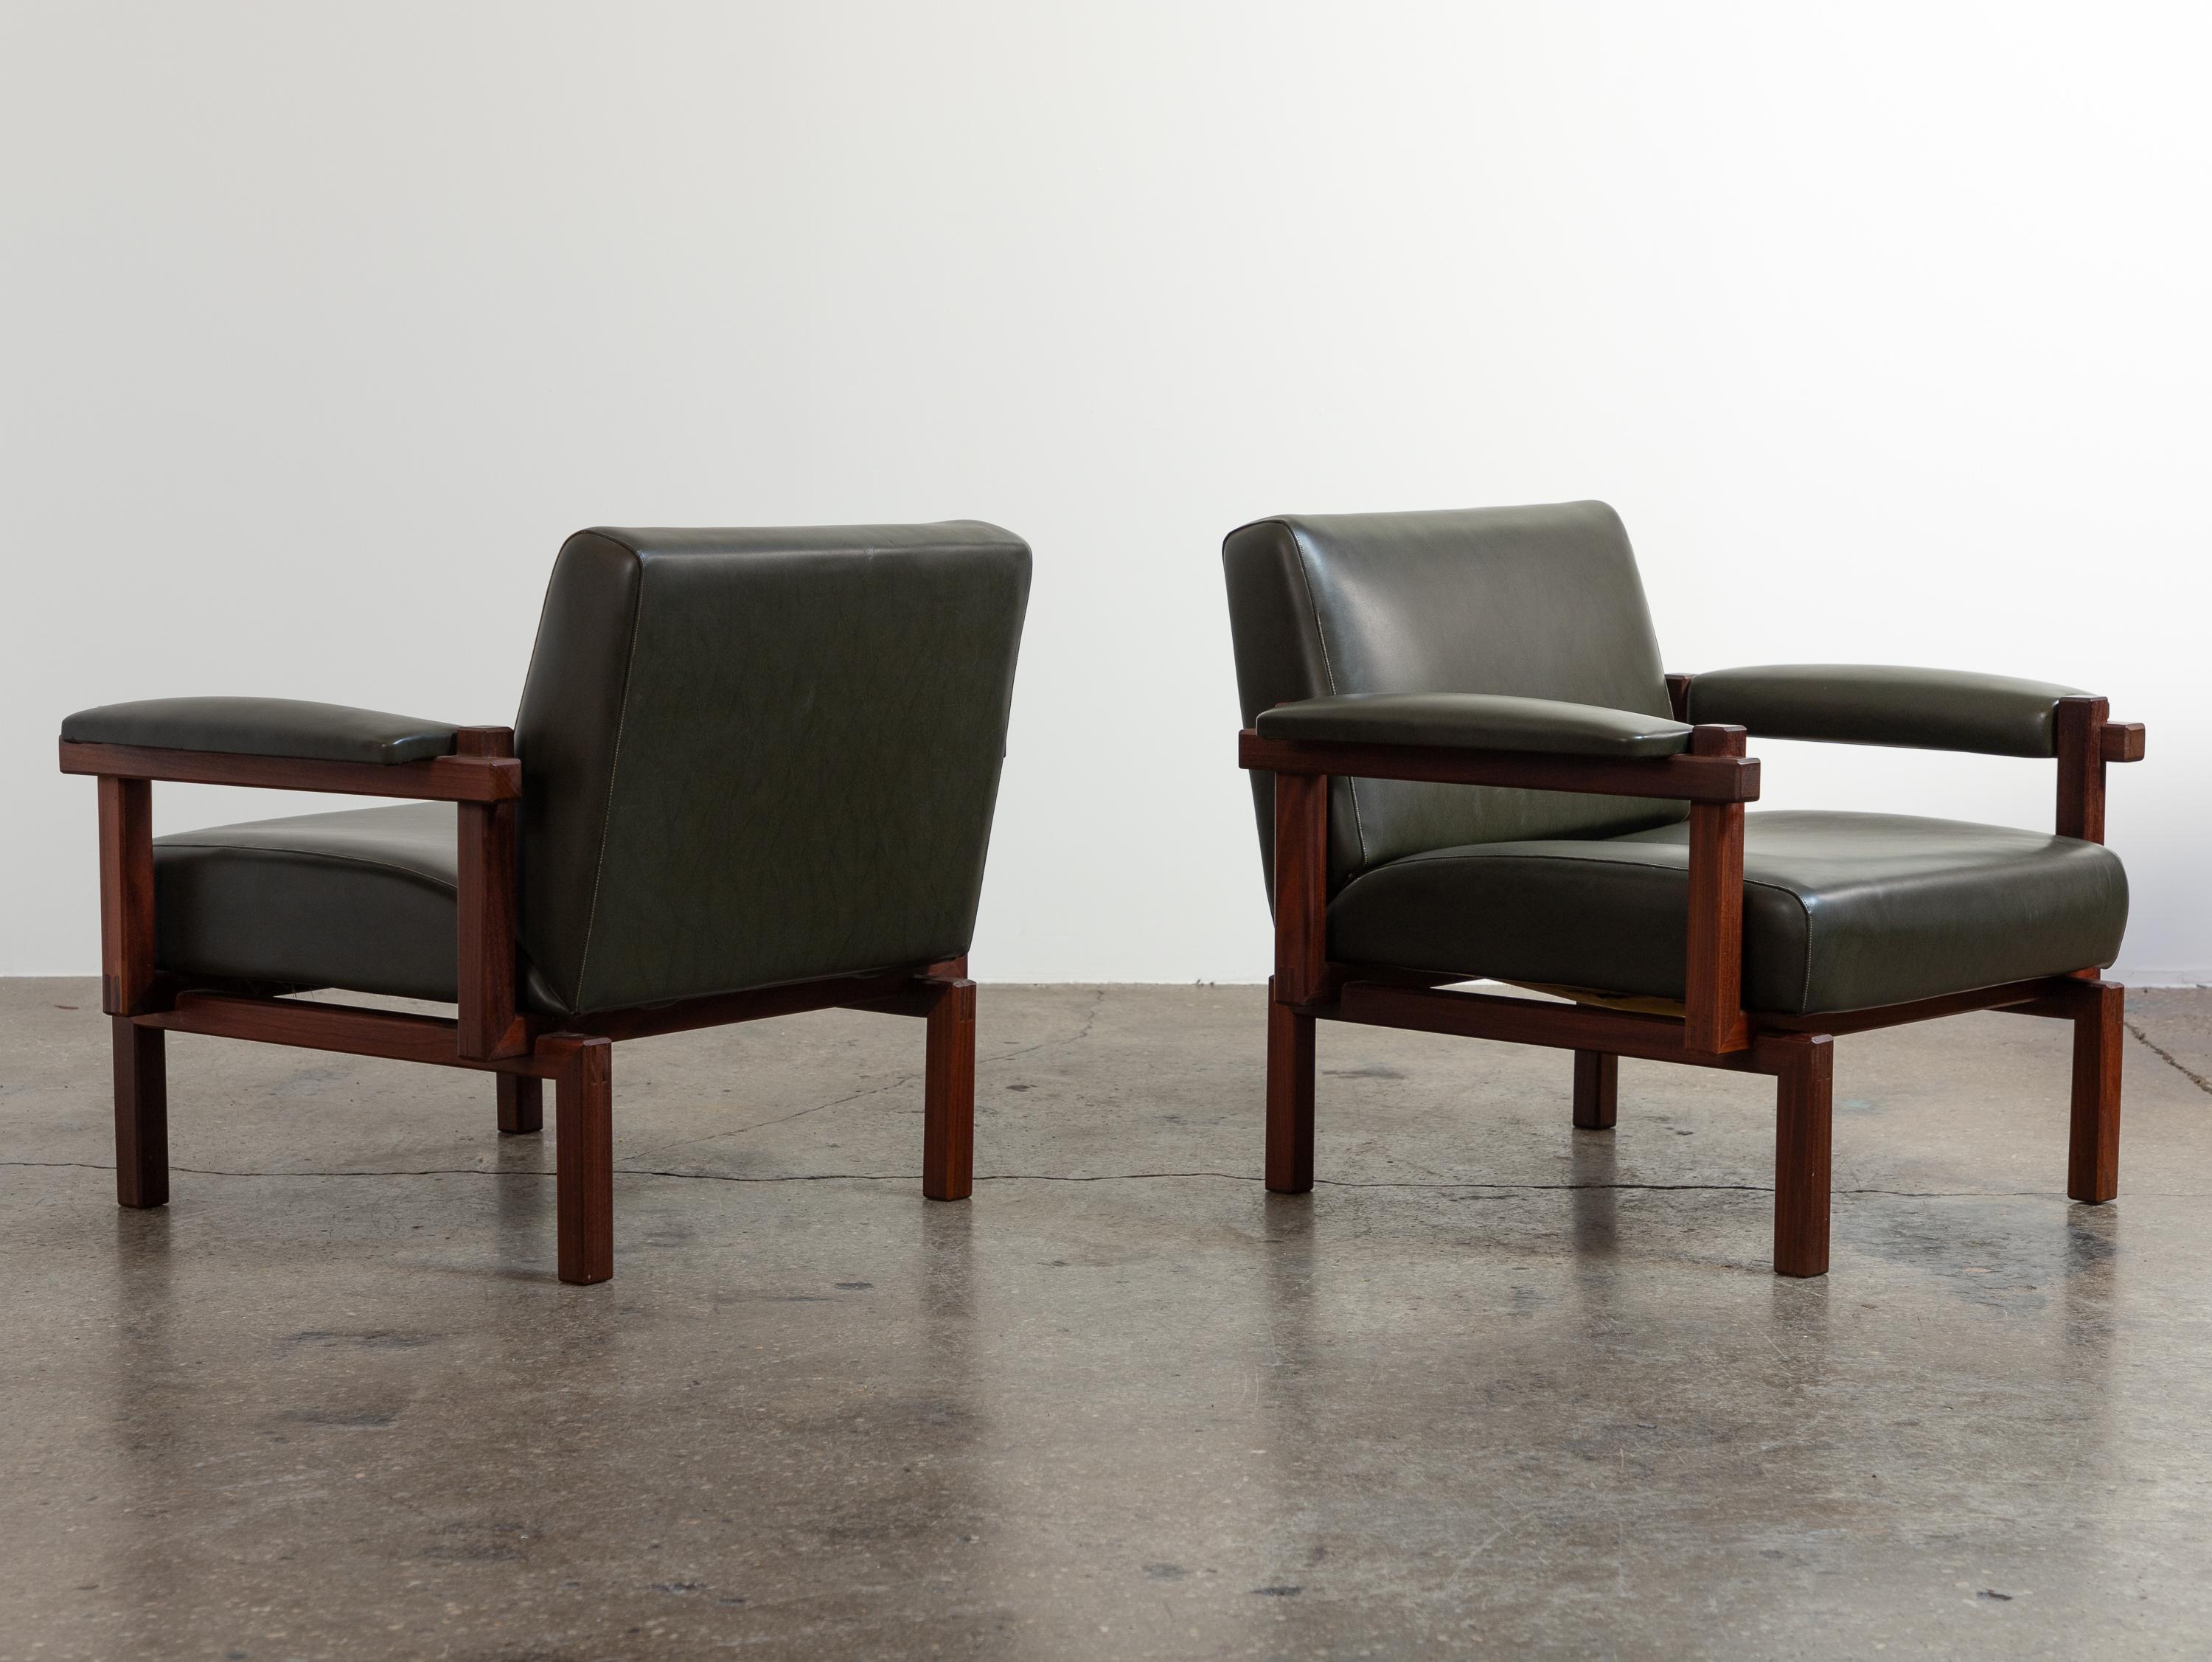 Magnifique paire de chaises longues Grazia, conçues par Raffaella Crespi pour Elam. Fabriqué à partir de noyer italien de qualité, le design à cadre ouvert présente une influence constructiviste intrigante. Ces chaises élégantes présentent un profil